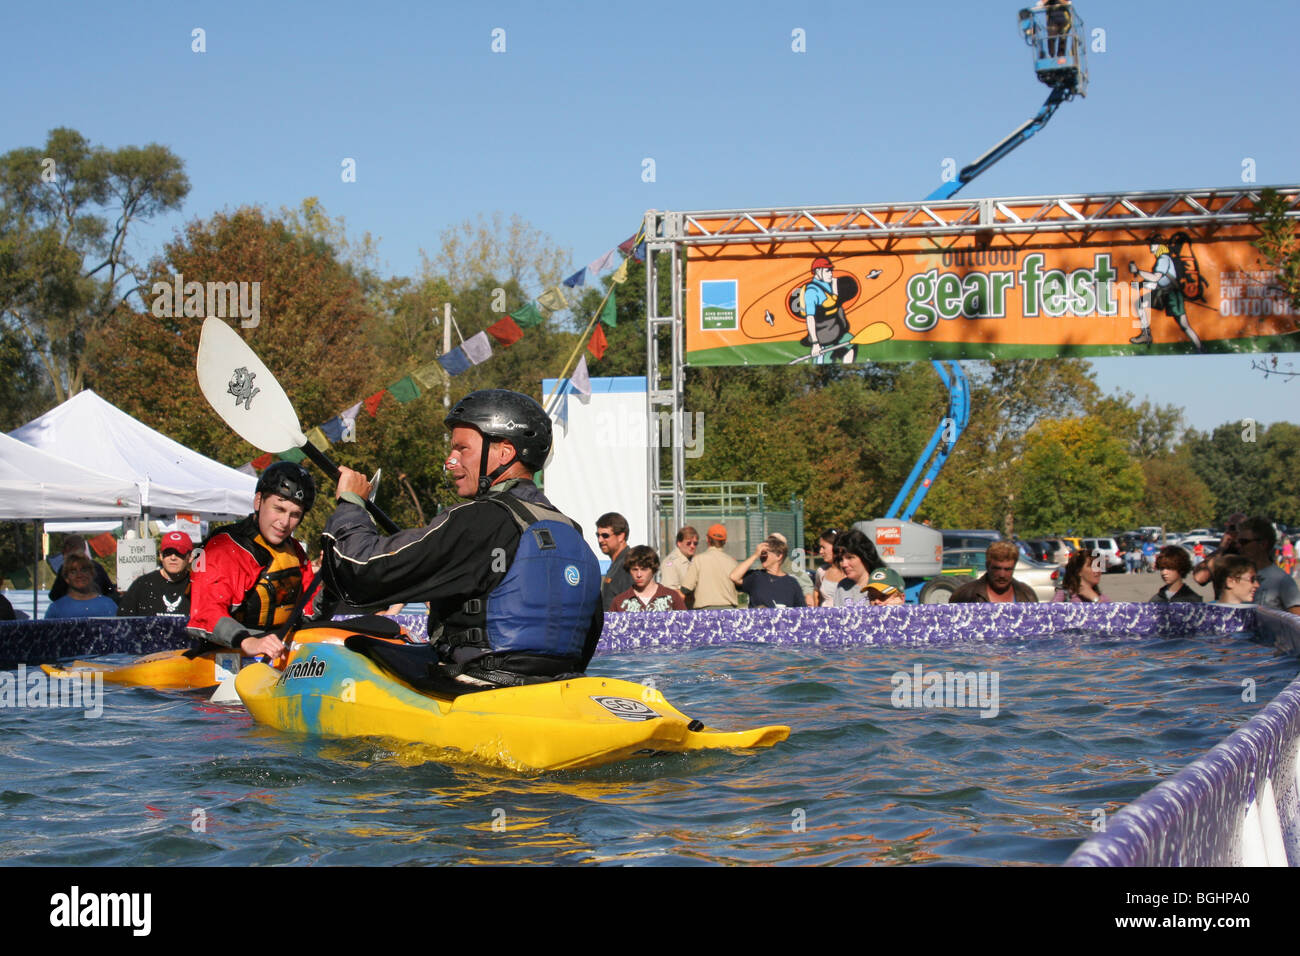 Démonstration de kayak à Gearfest, Eastwood Metropark, Dayton, Ohio. Banque D'Images